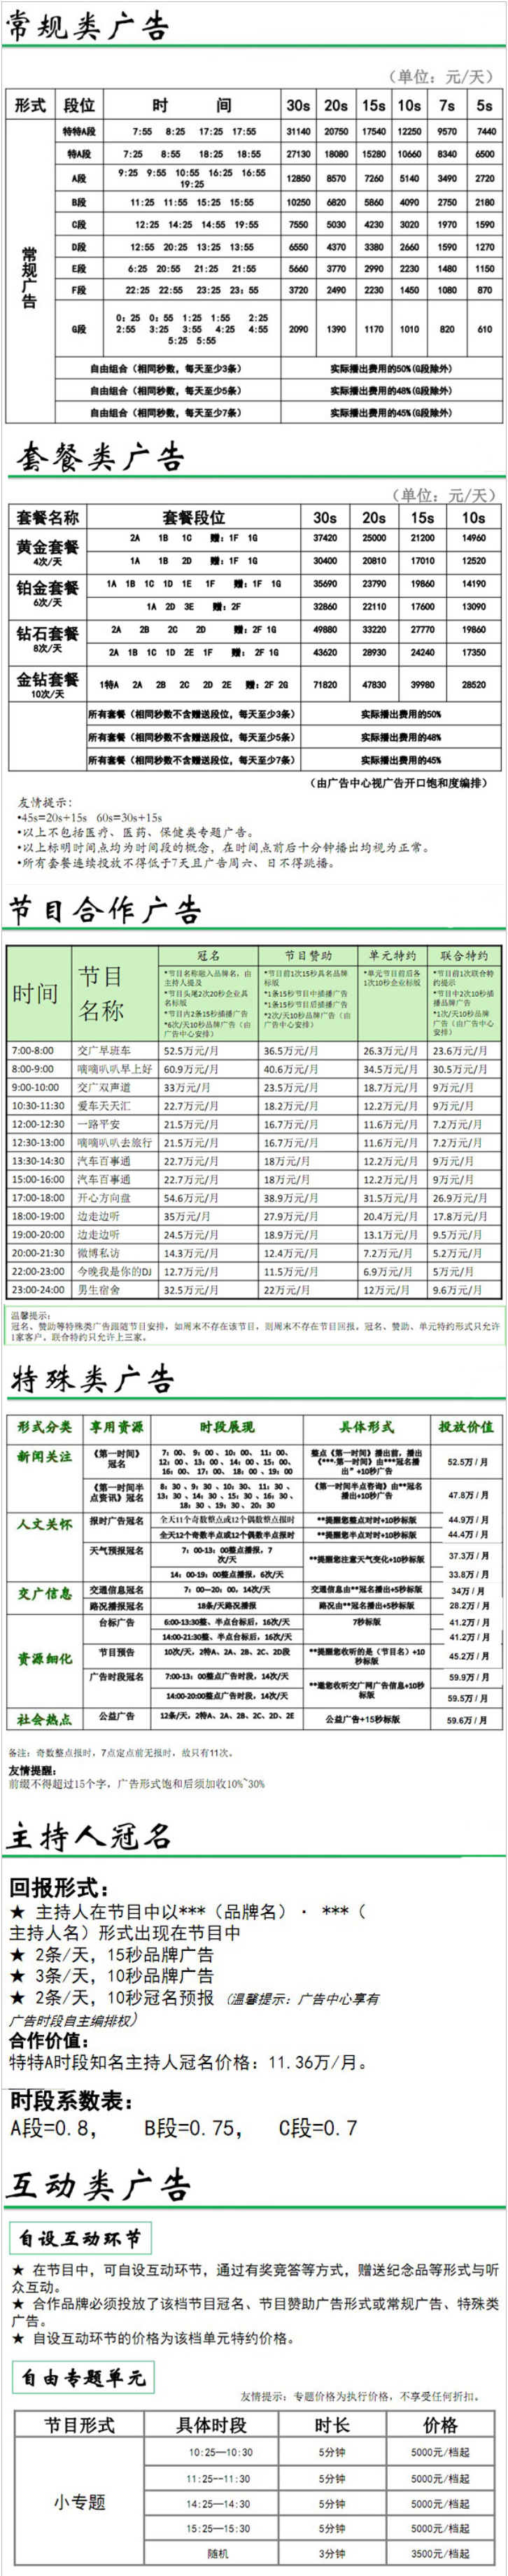 2013江苏人民广播电台交通台 FM101.1广告报价表.png